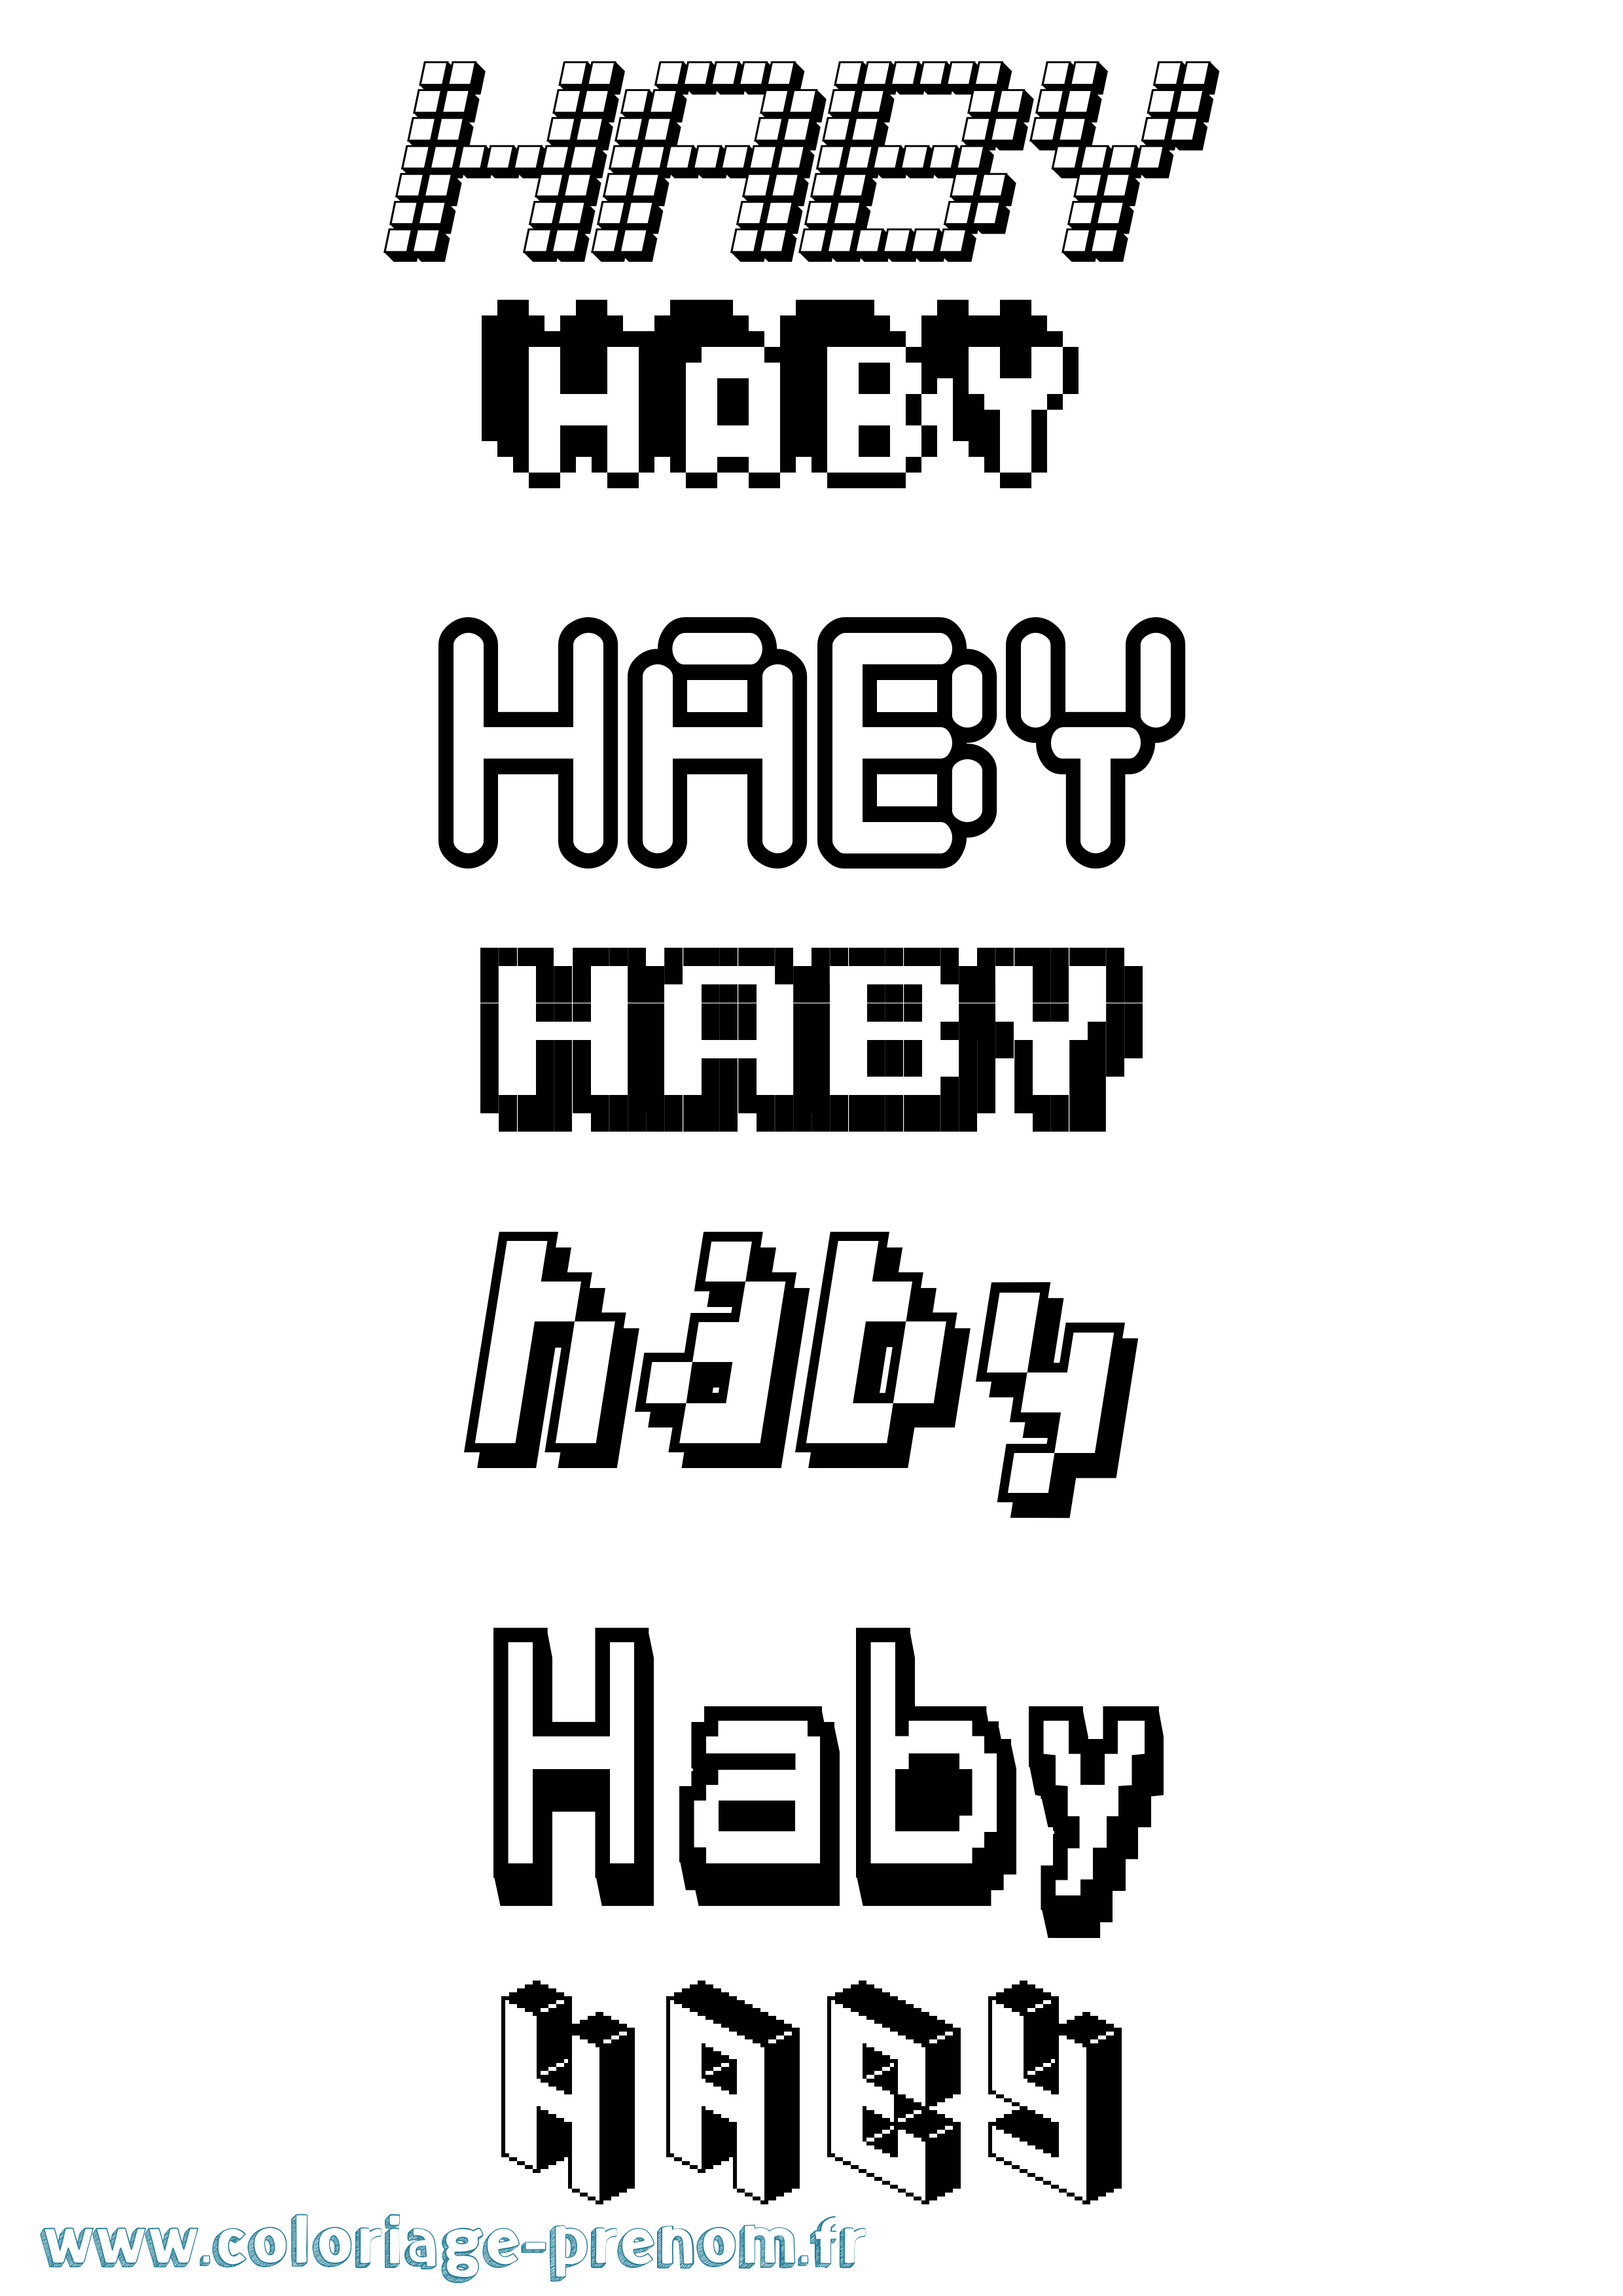 Coloriage prénom Haby Pixel